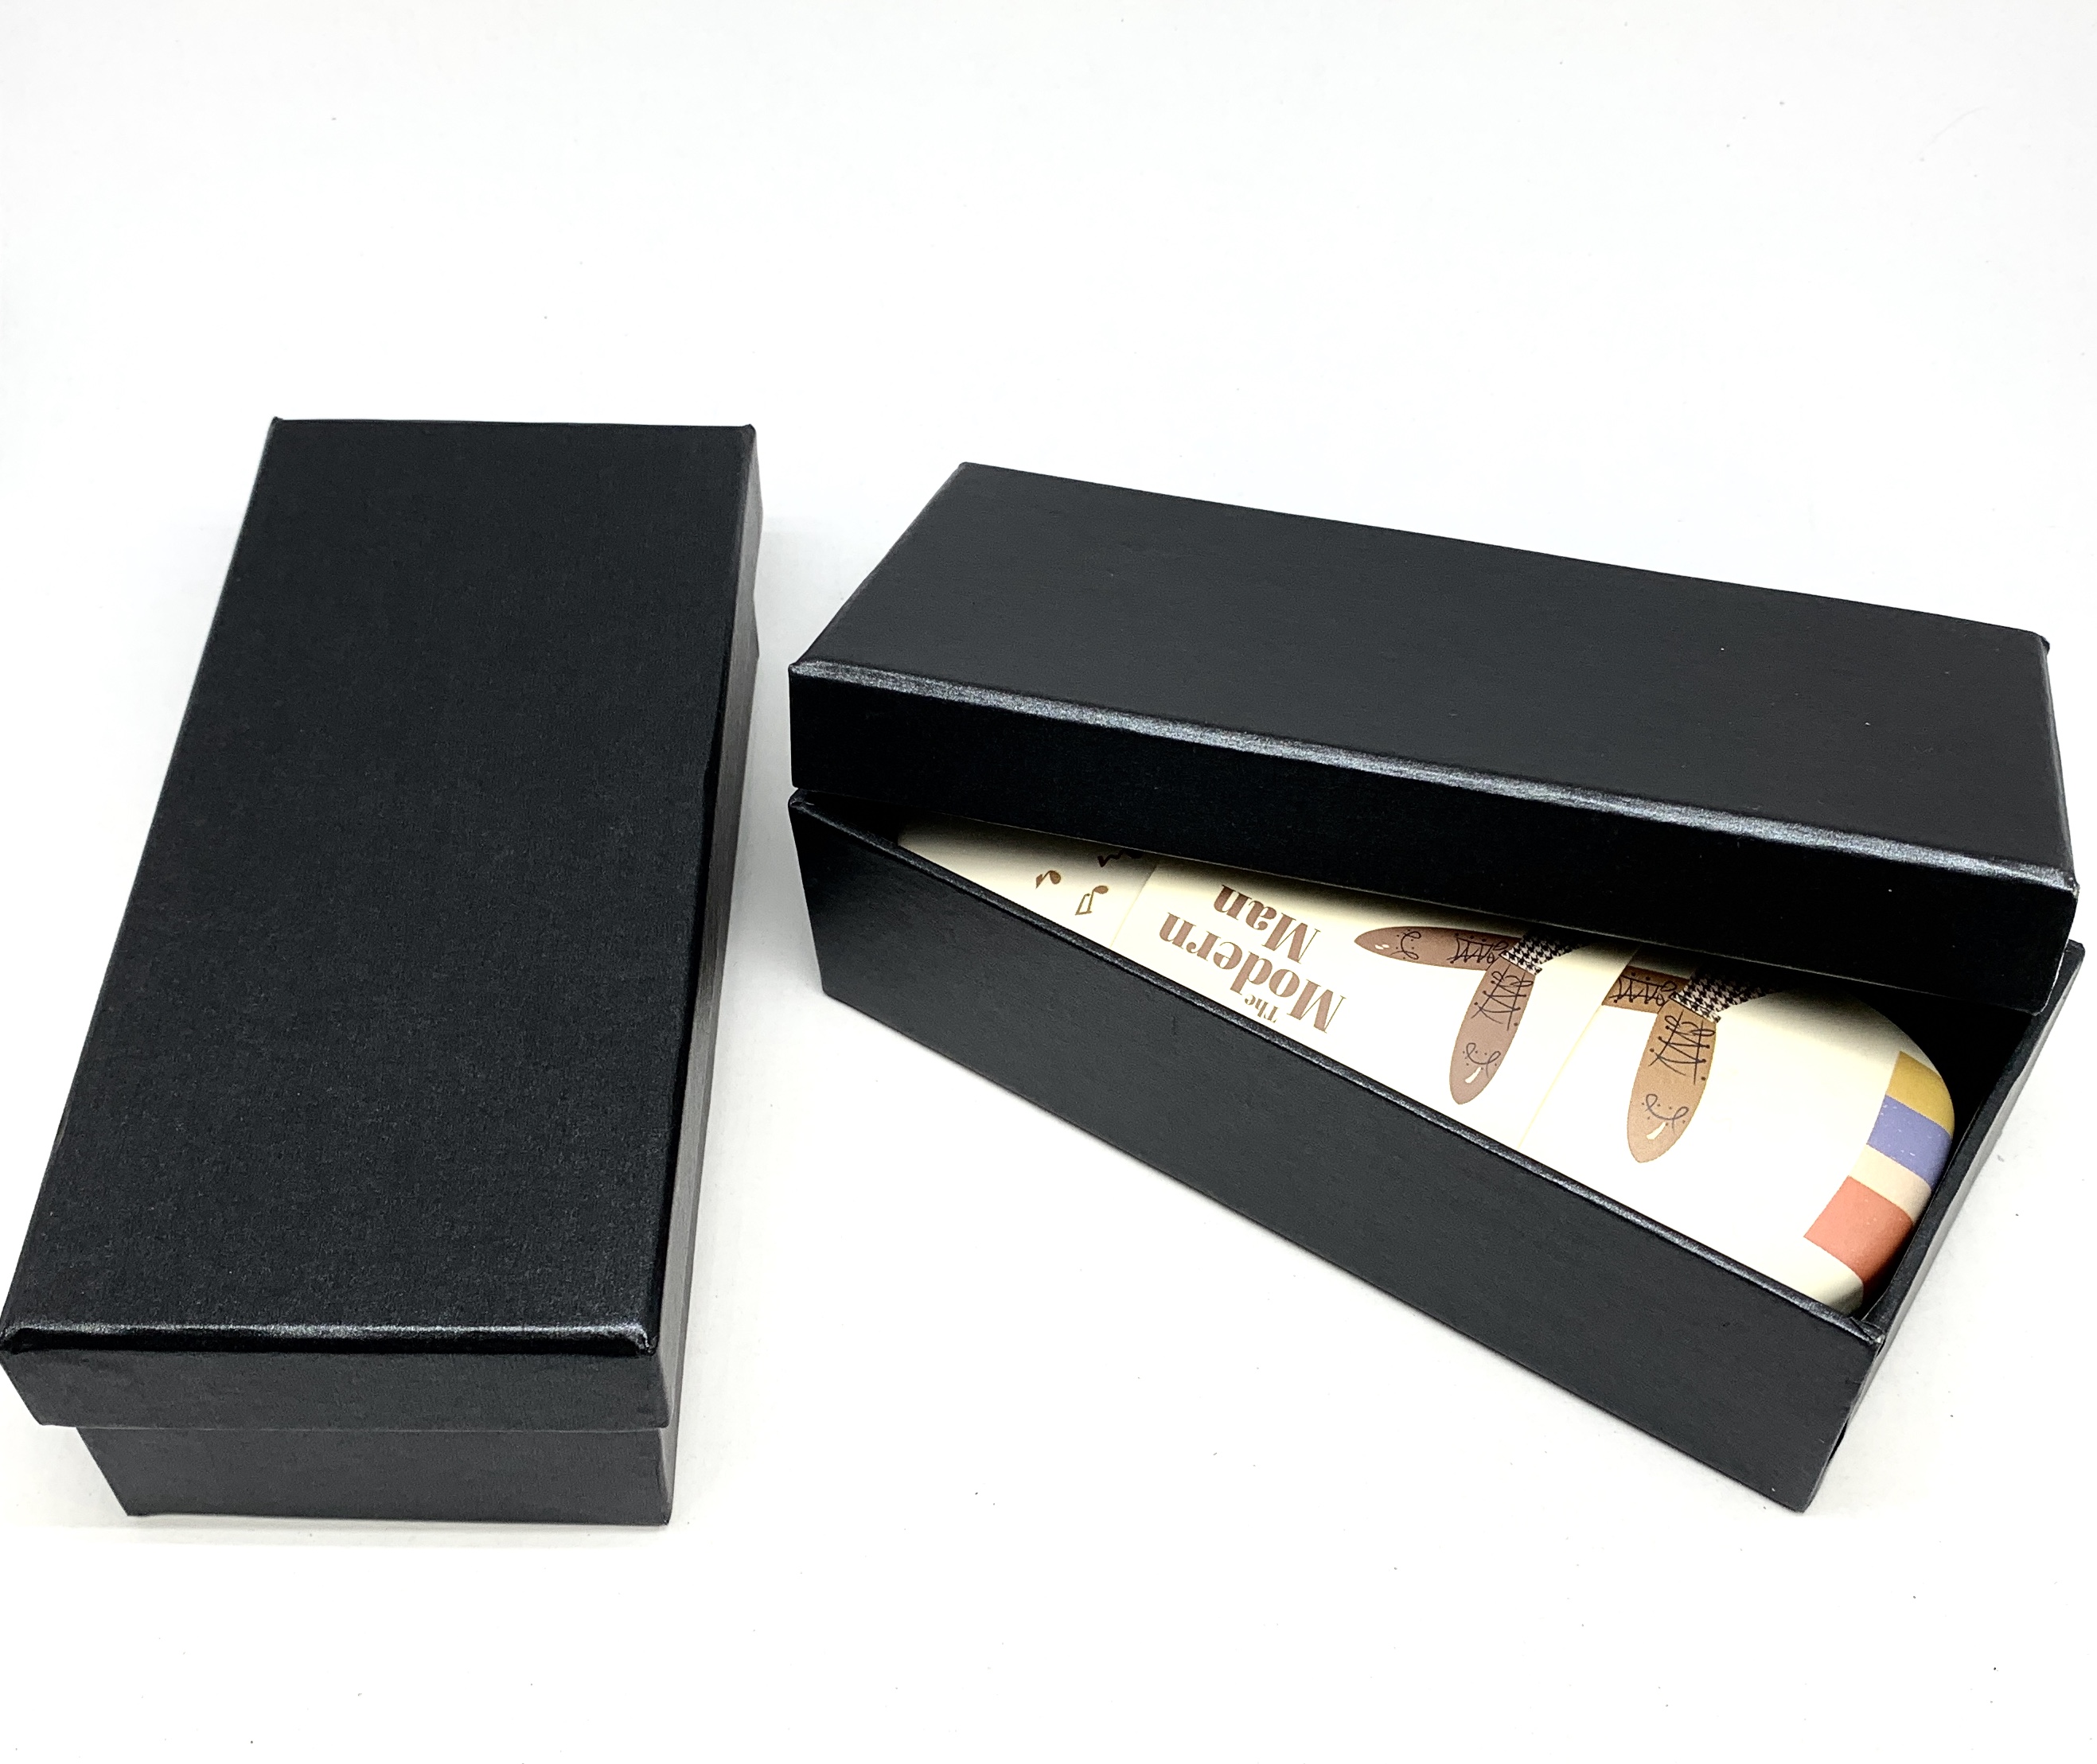 Download Paperbox Geschenkbox aus Pappe | Präsentation ...